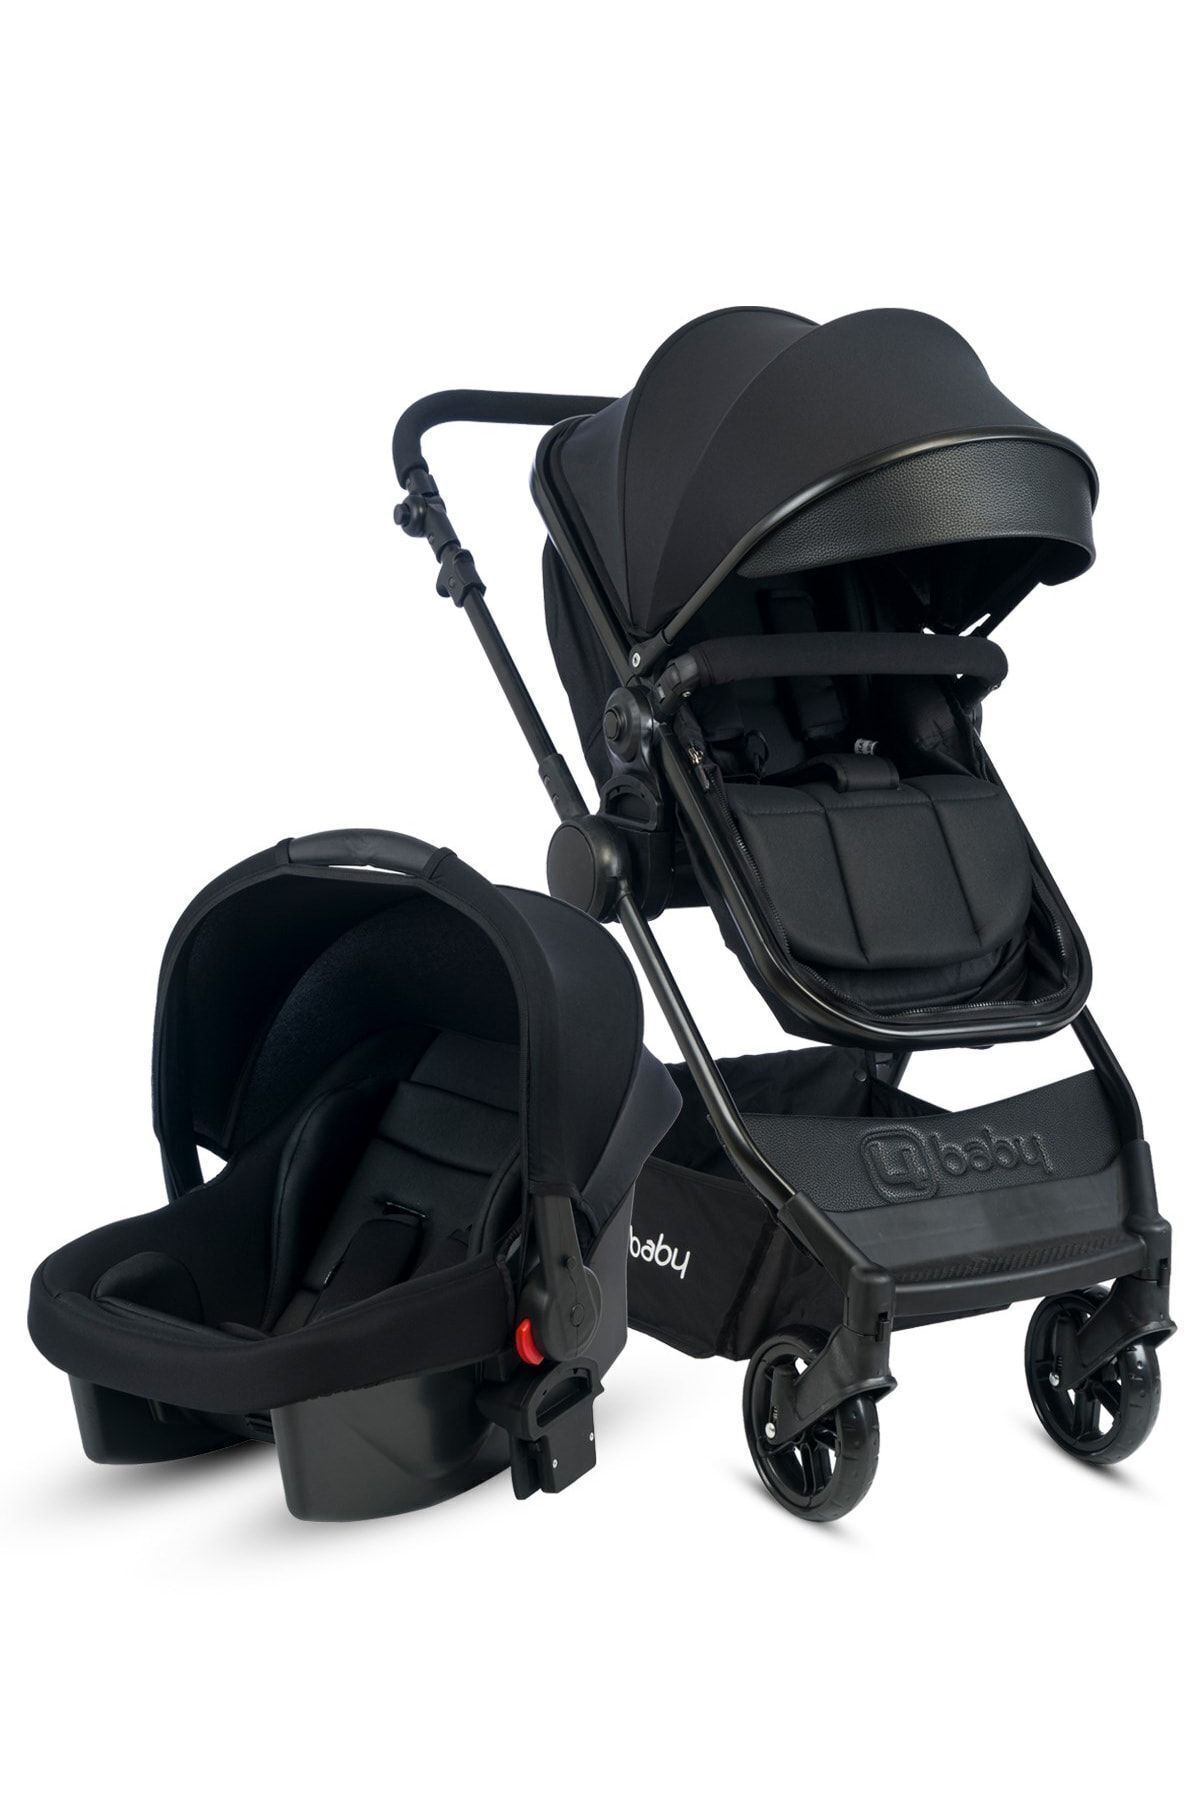 4 Baby - Cool Siyah Travel Sistem Bebek Arabası Seyahat Sistem (PUSET) Siyah AB 482-4